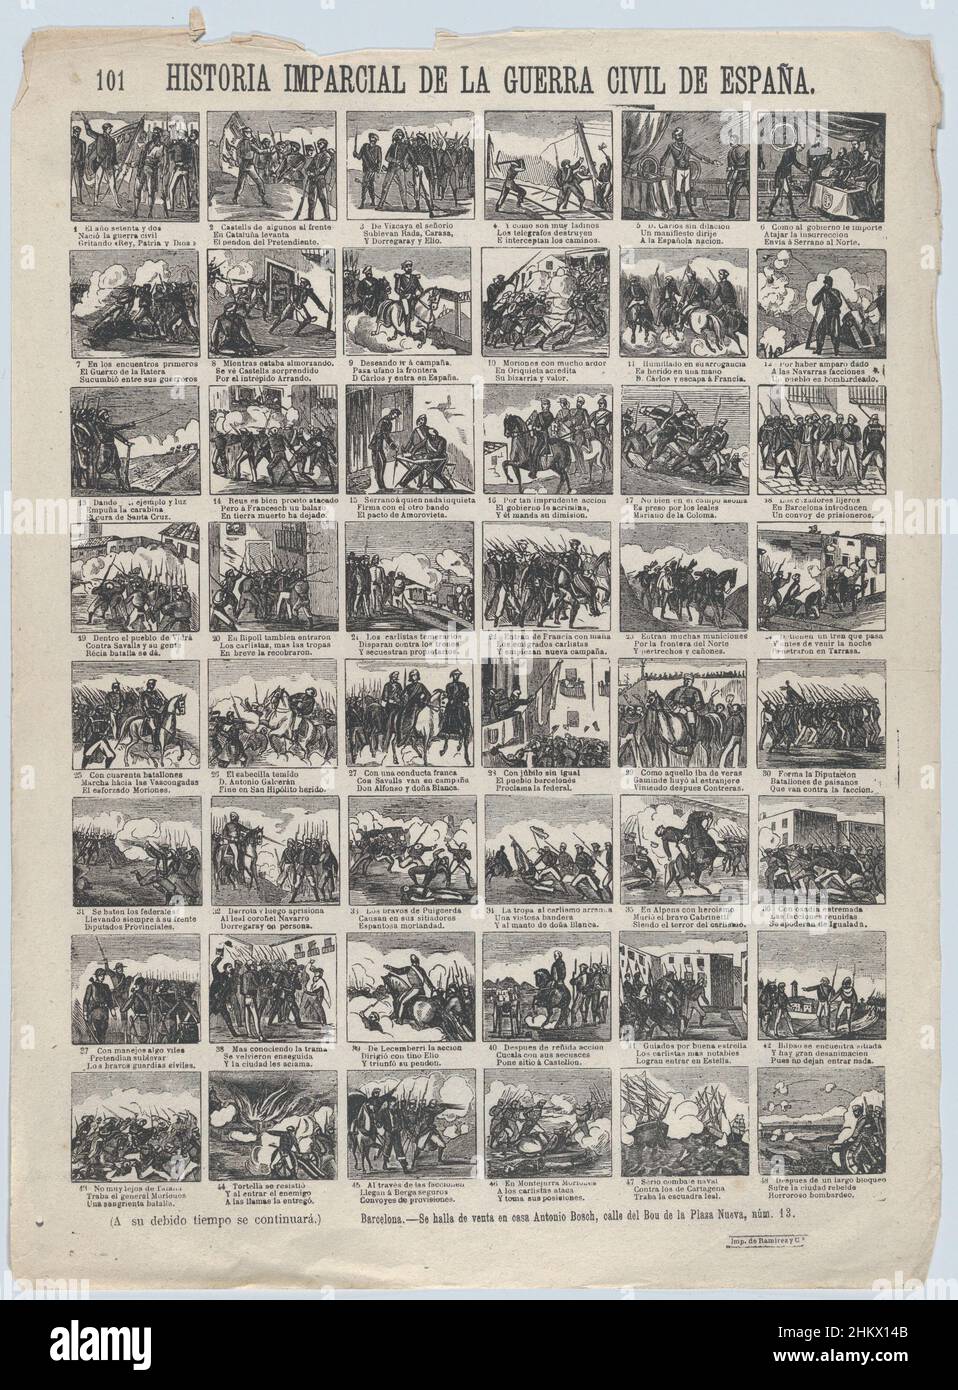 Broadside con 48 escenas que cuentan la historia 'imparcial' de la guerra civil en España (Parte 1) SE REUNIÓ DP875790 Foto de stock